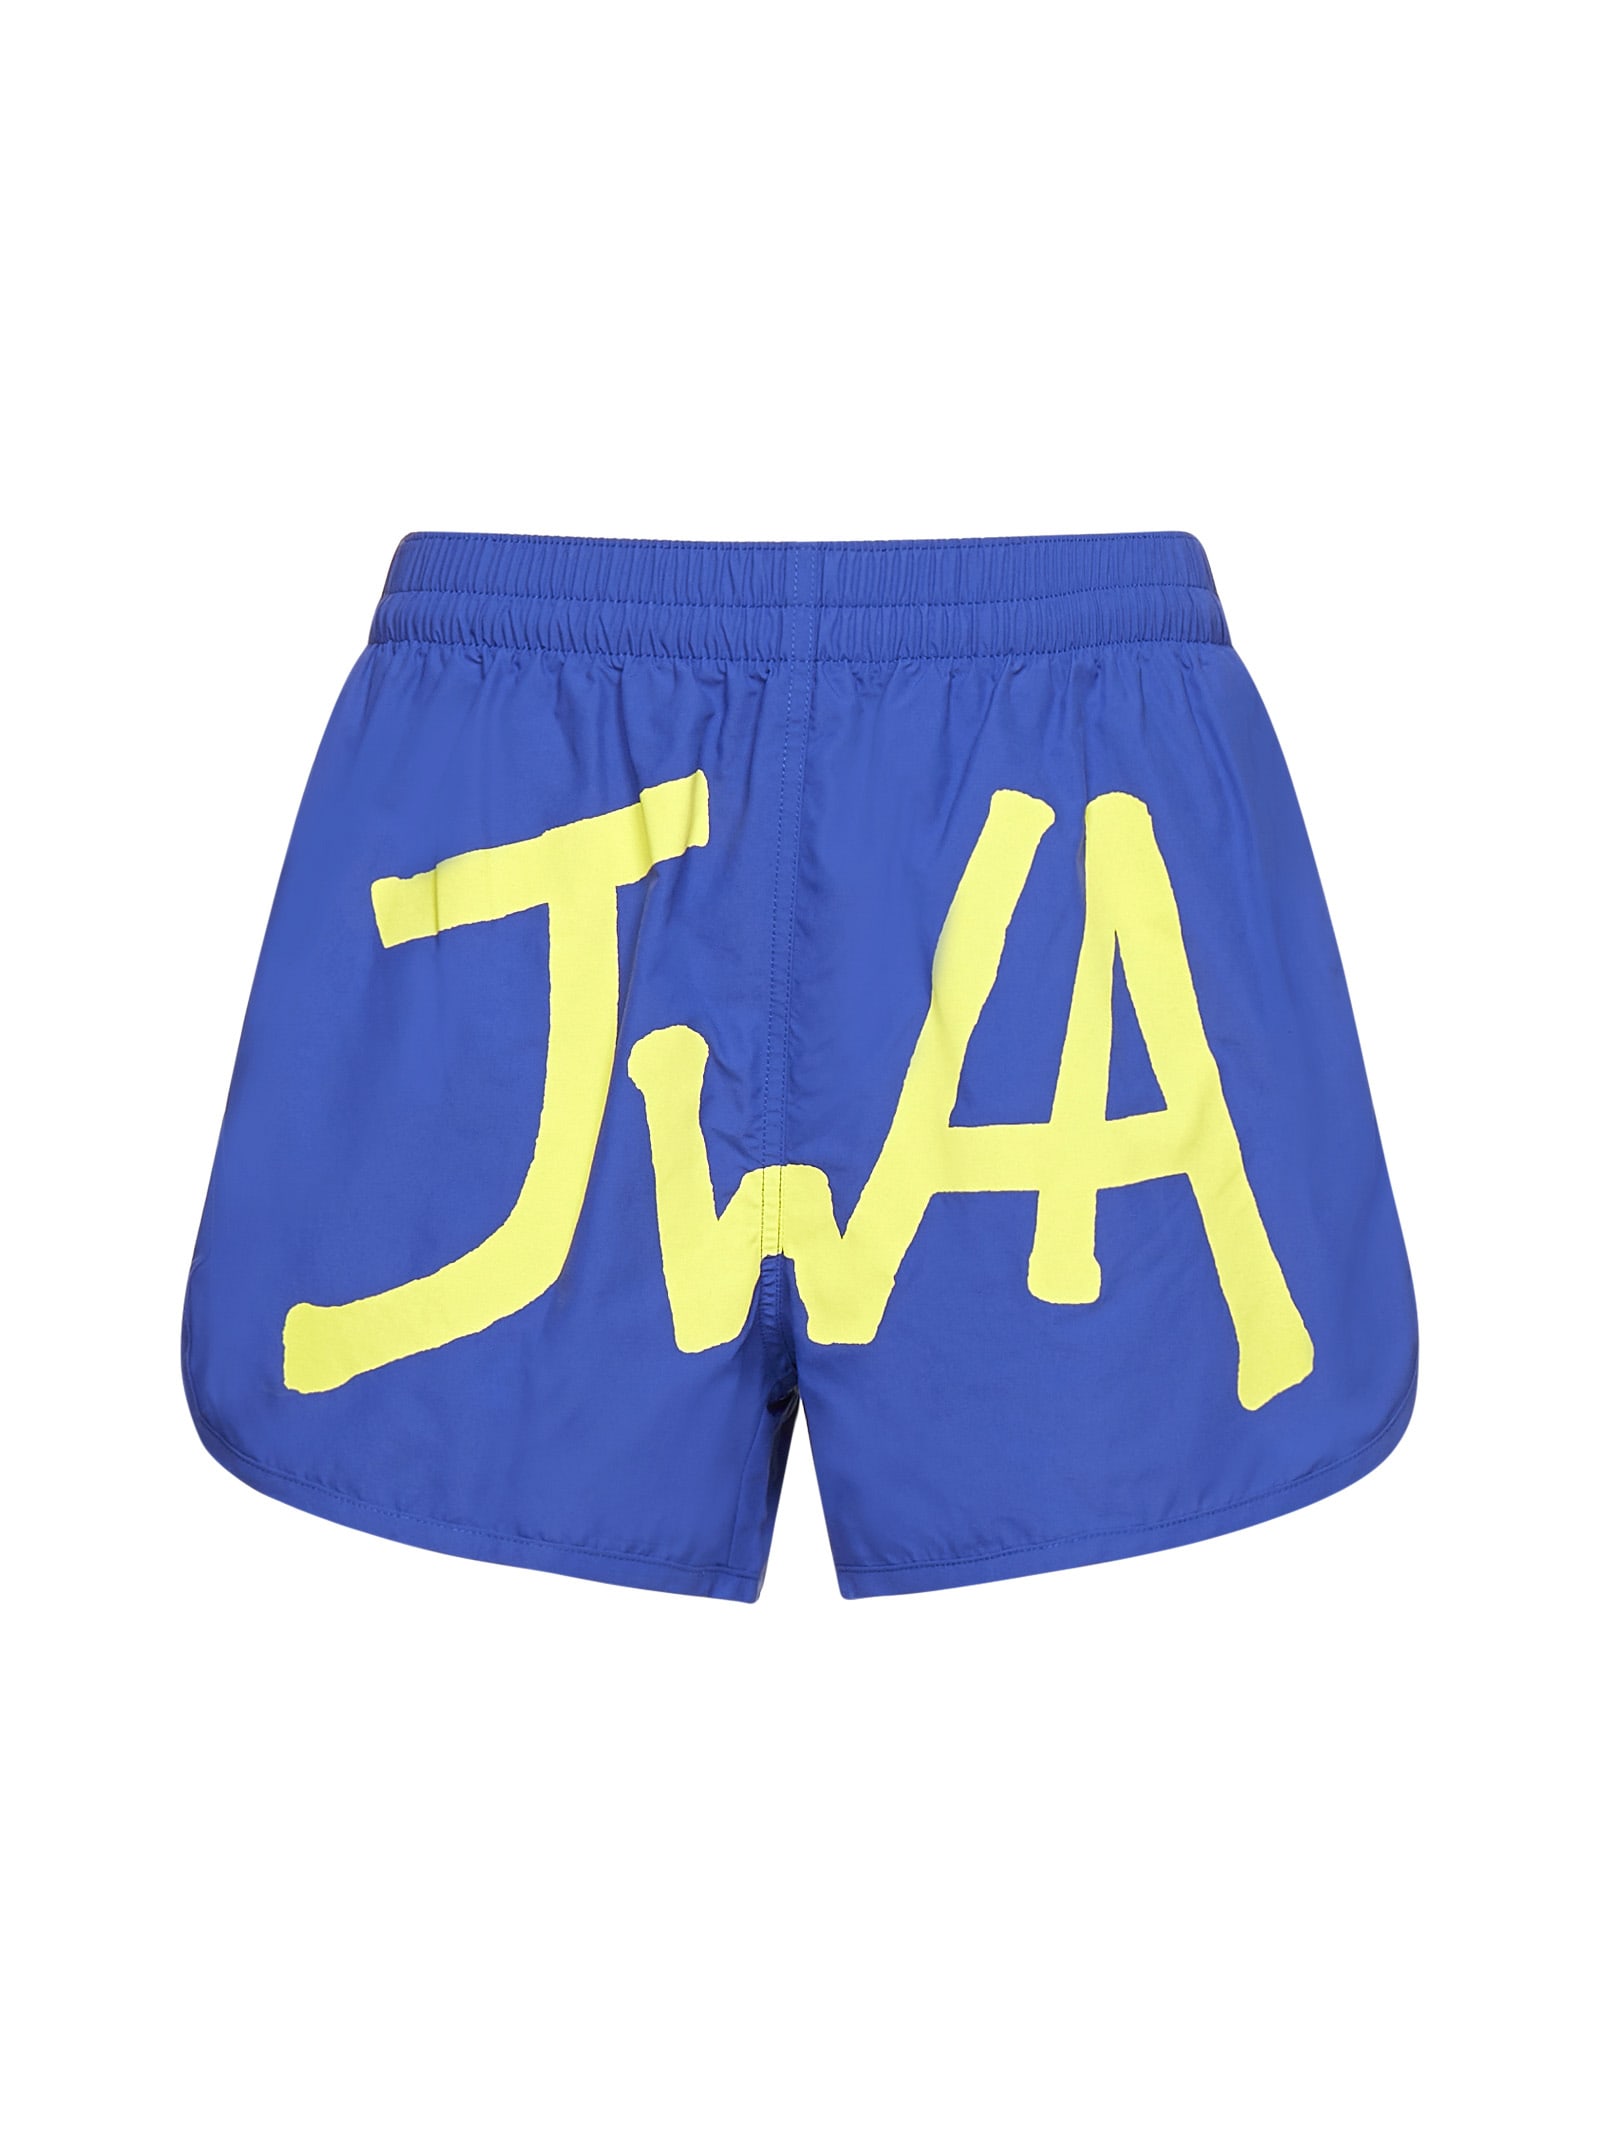 J.W. Anderson Swimwear